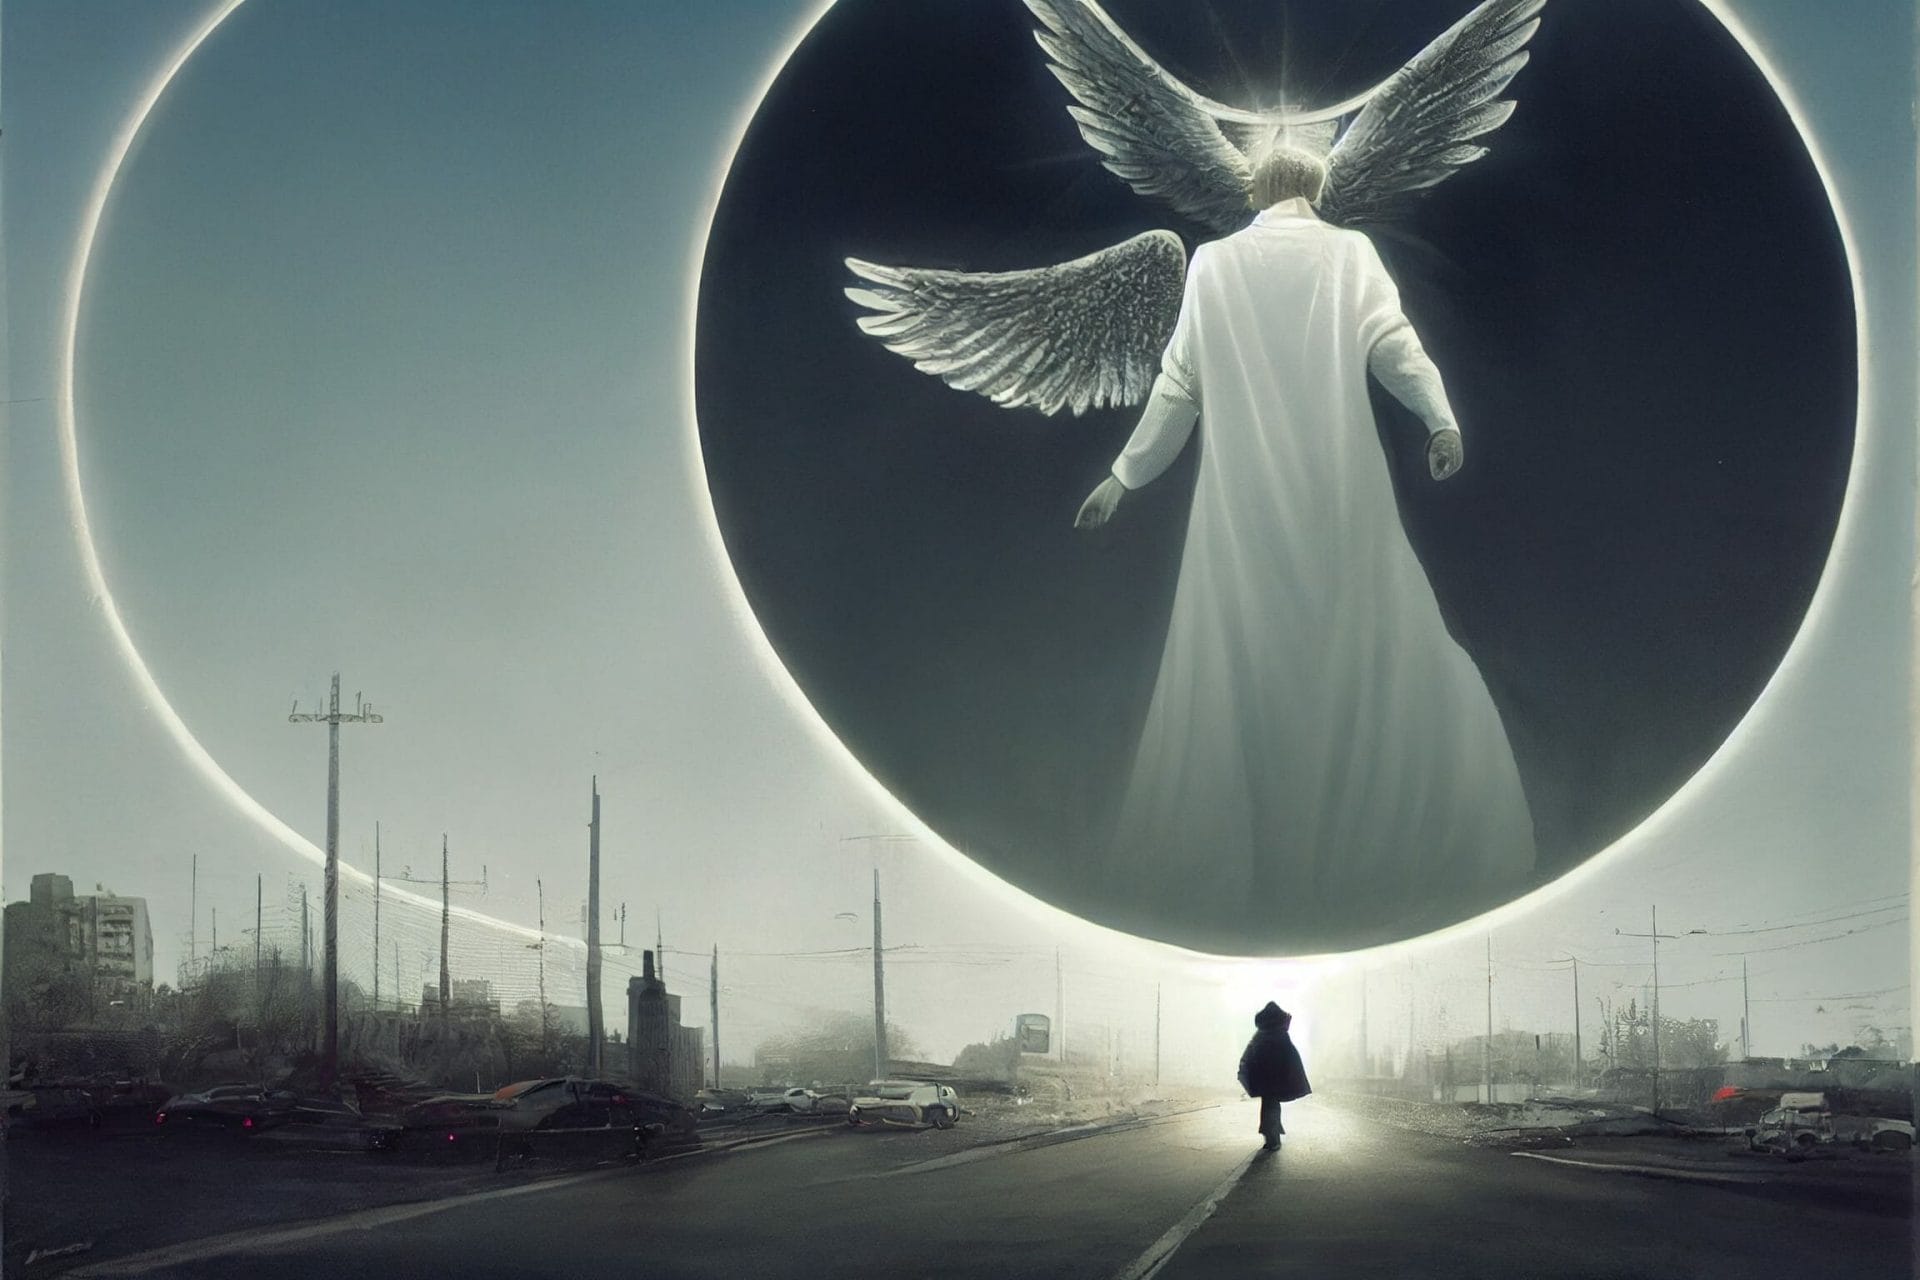 An angelic figure walks down a modern city street